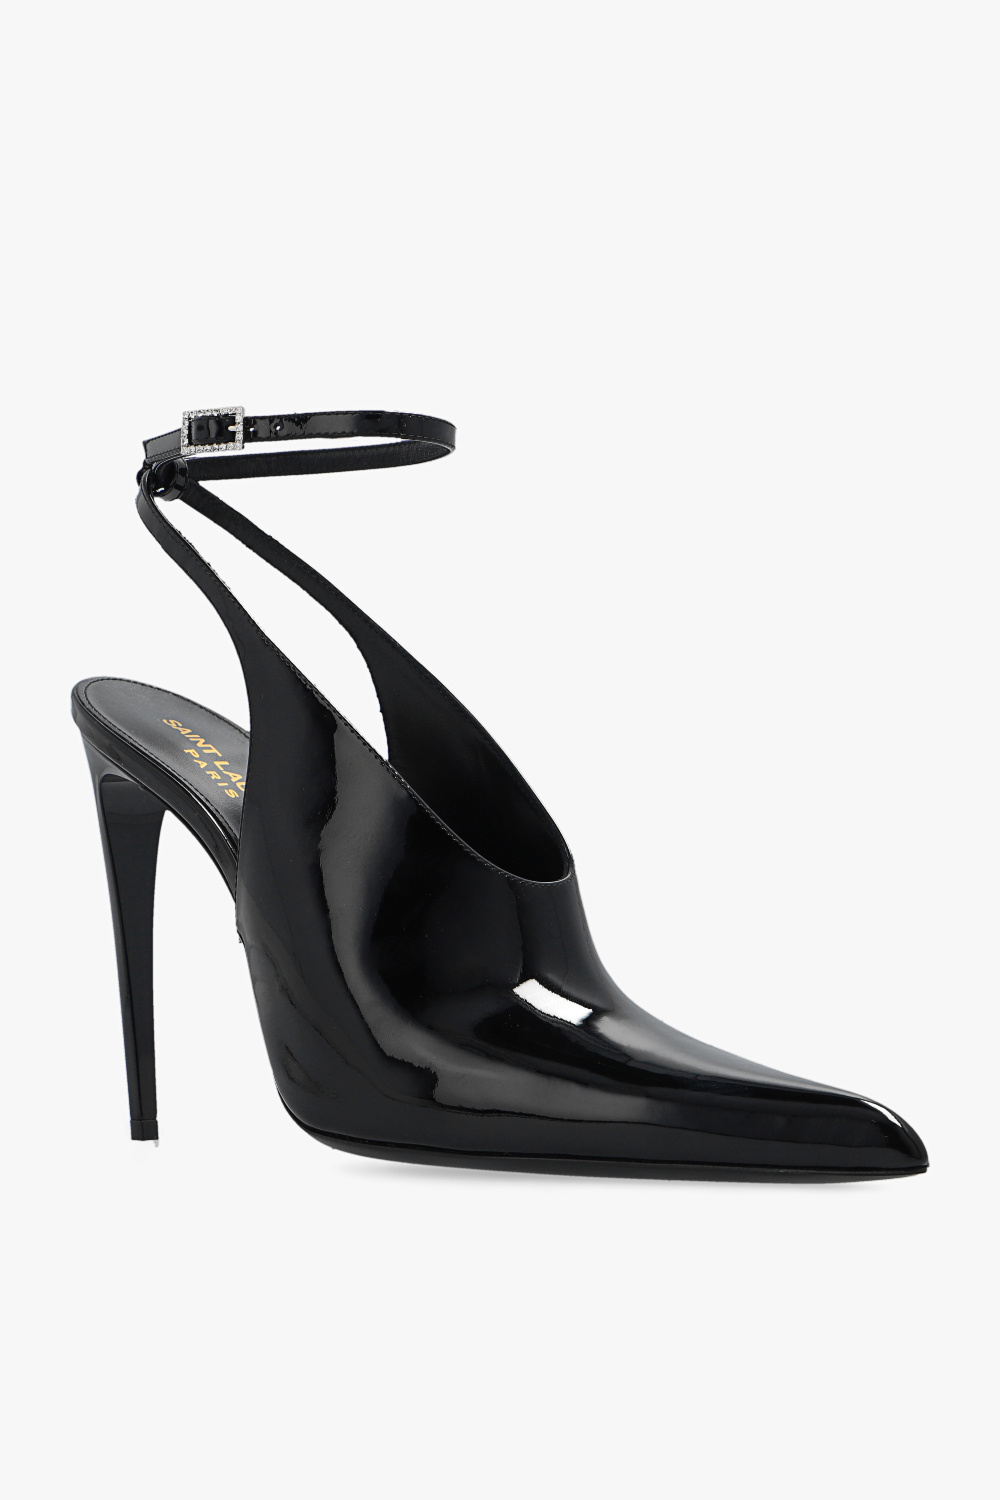 Saint Laurent ‘Pulp’ pumps in patent leather | Women's Shoes | Vitkac